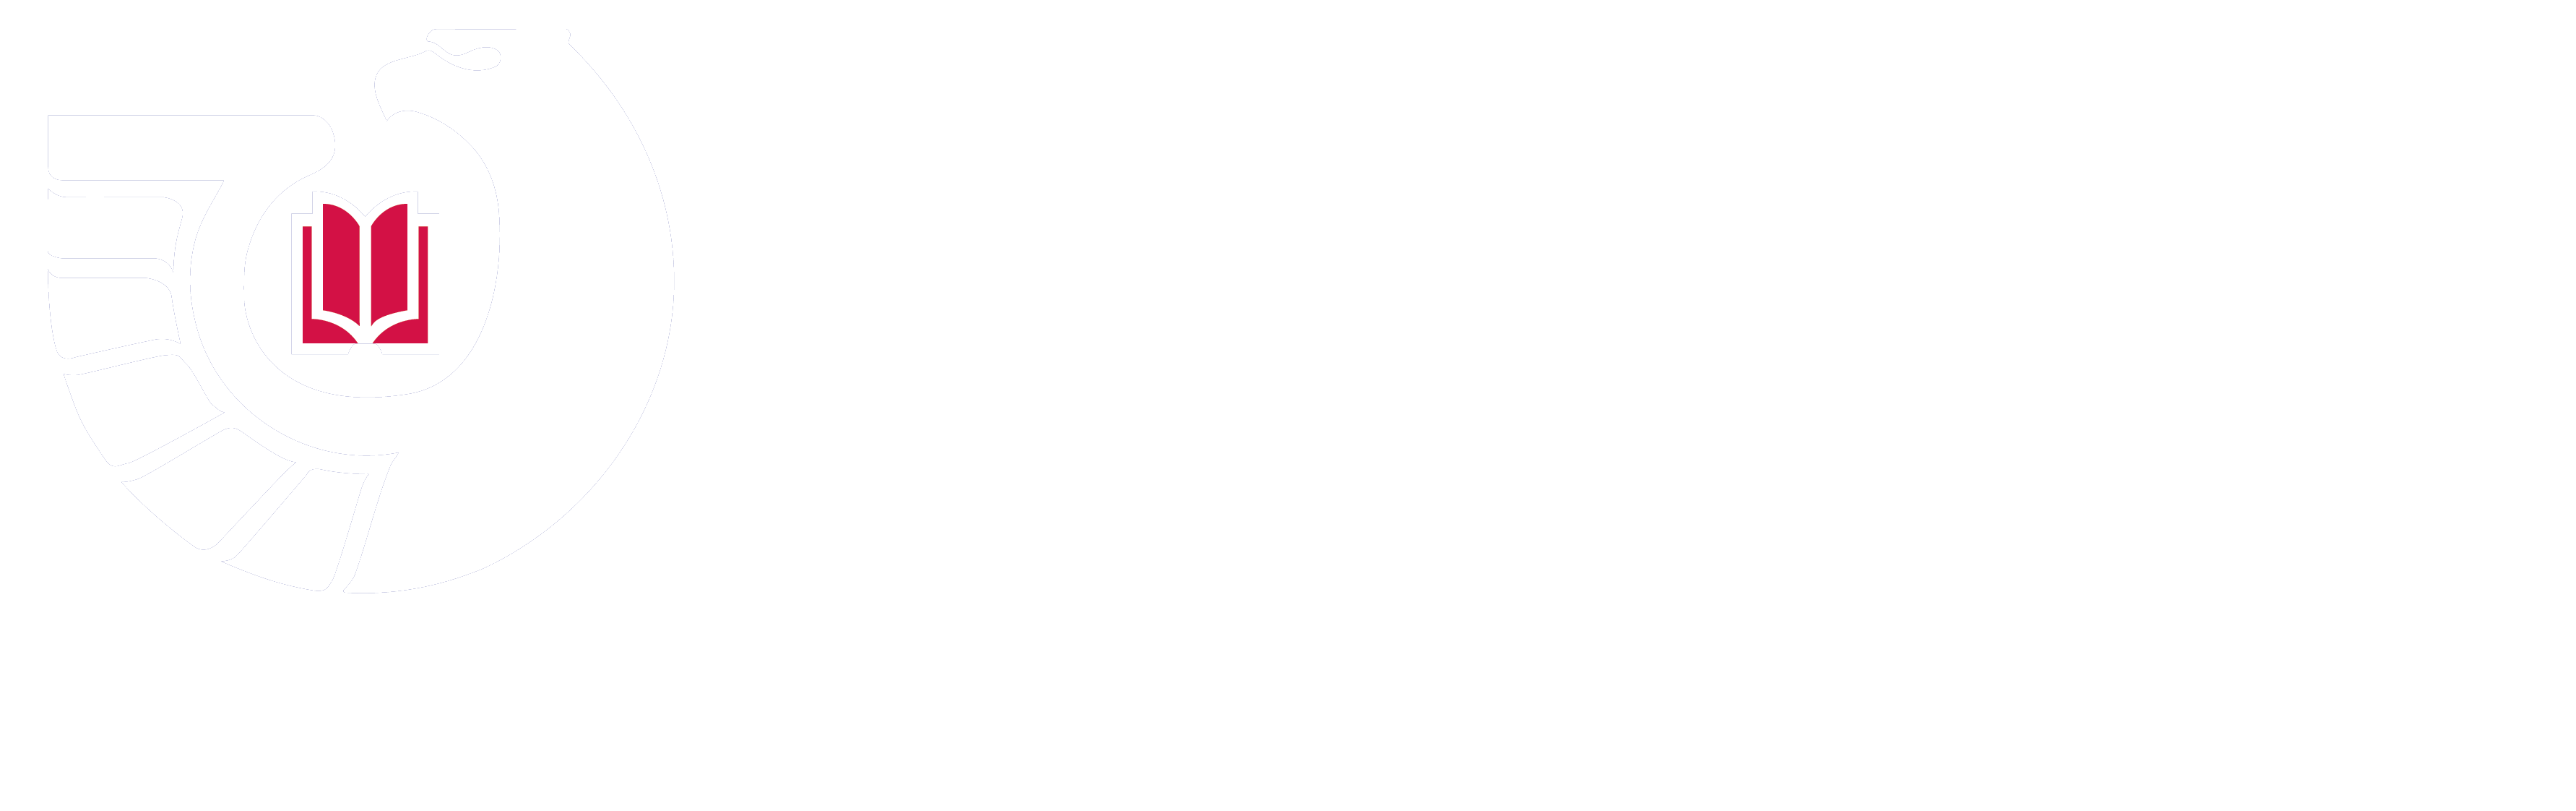 联邦图书馆登记项目的标志